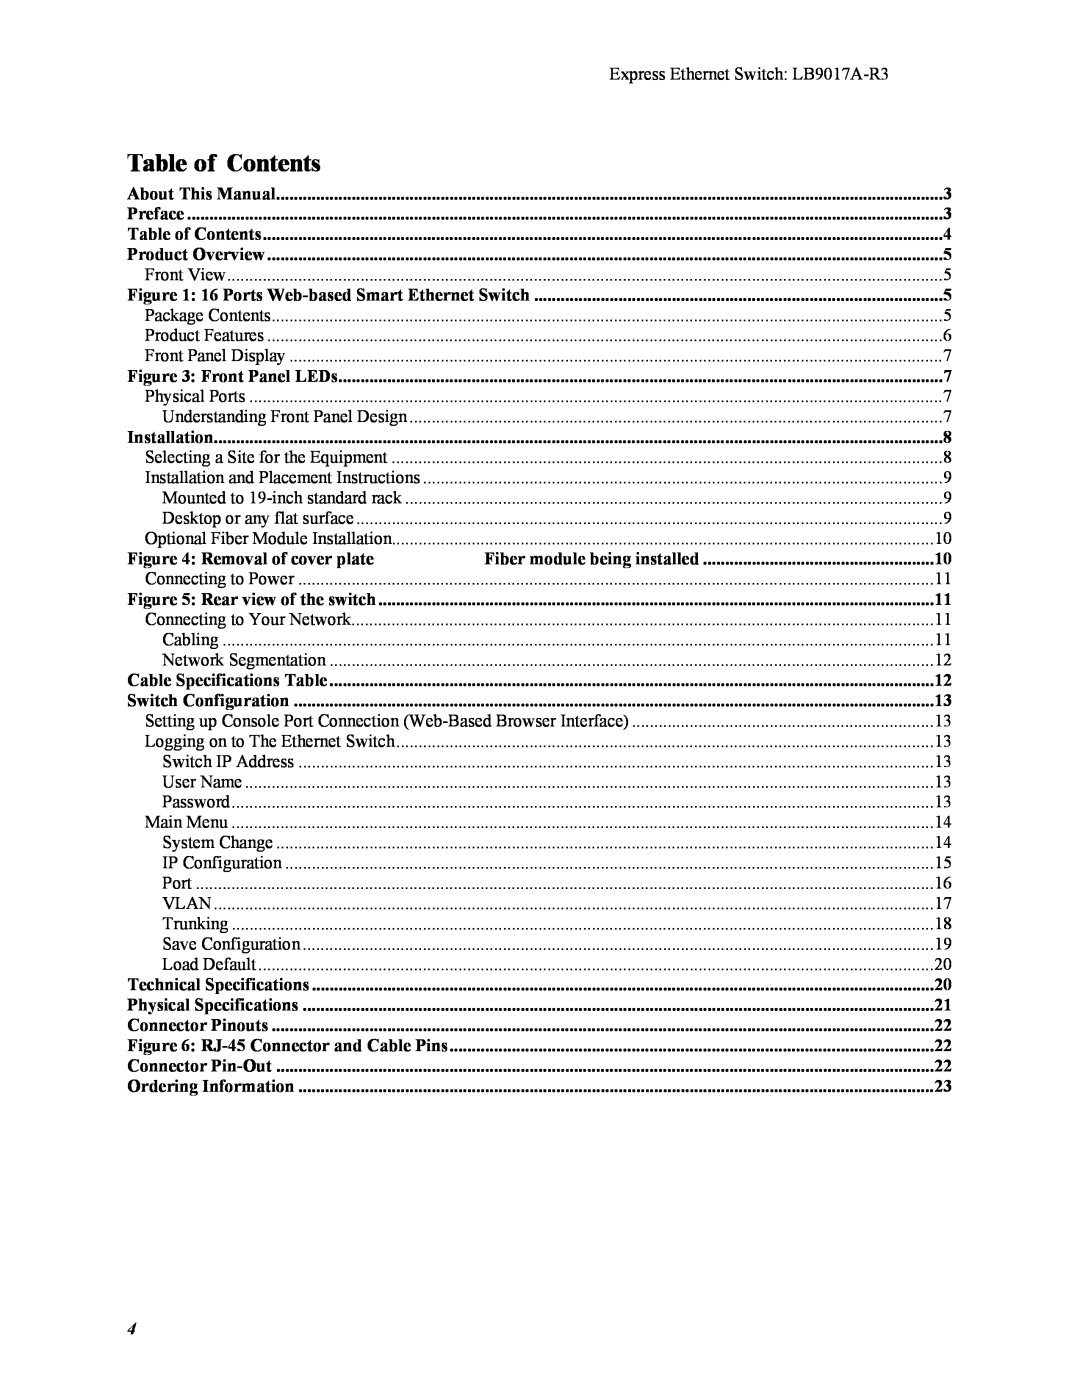 Black Box LB9017A-R3 manual Table of Contents 